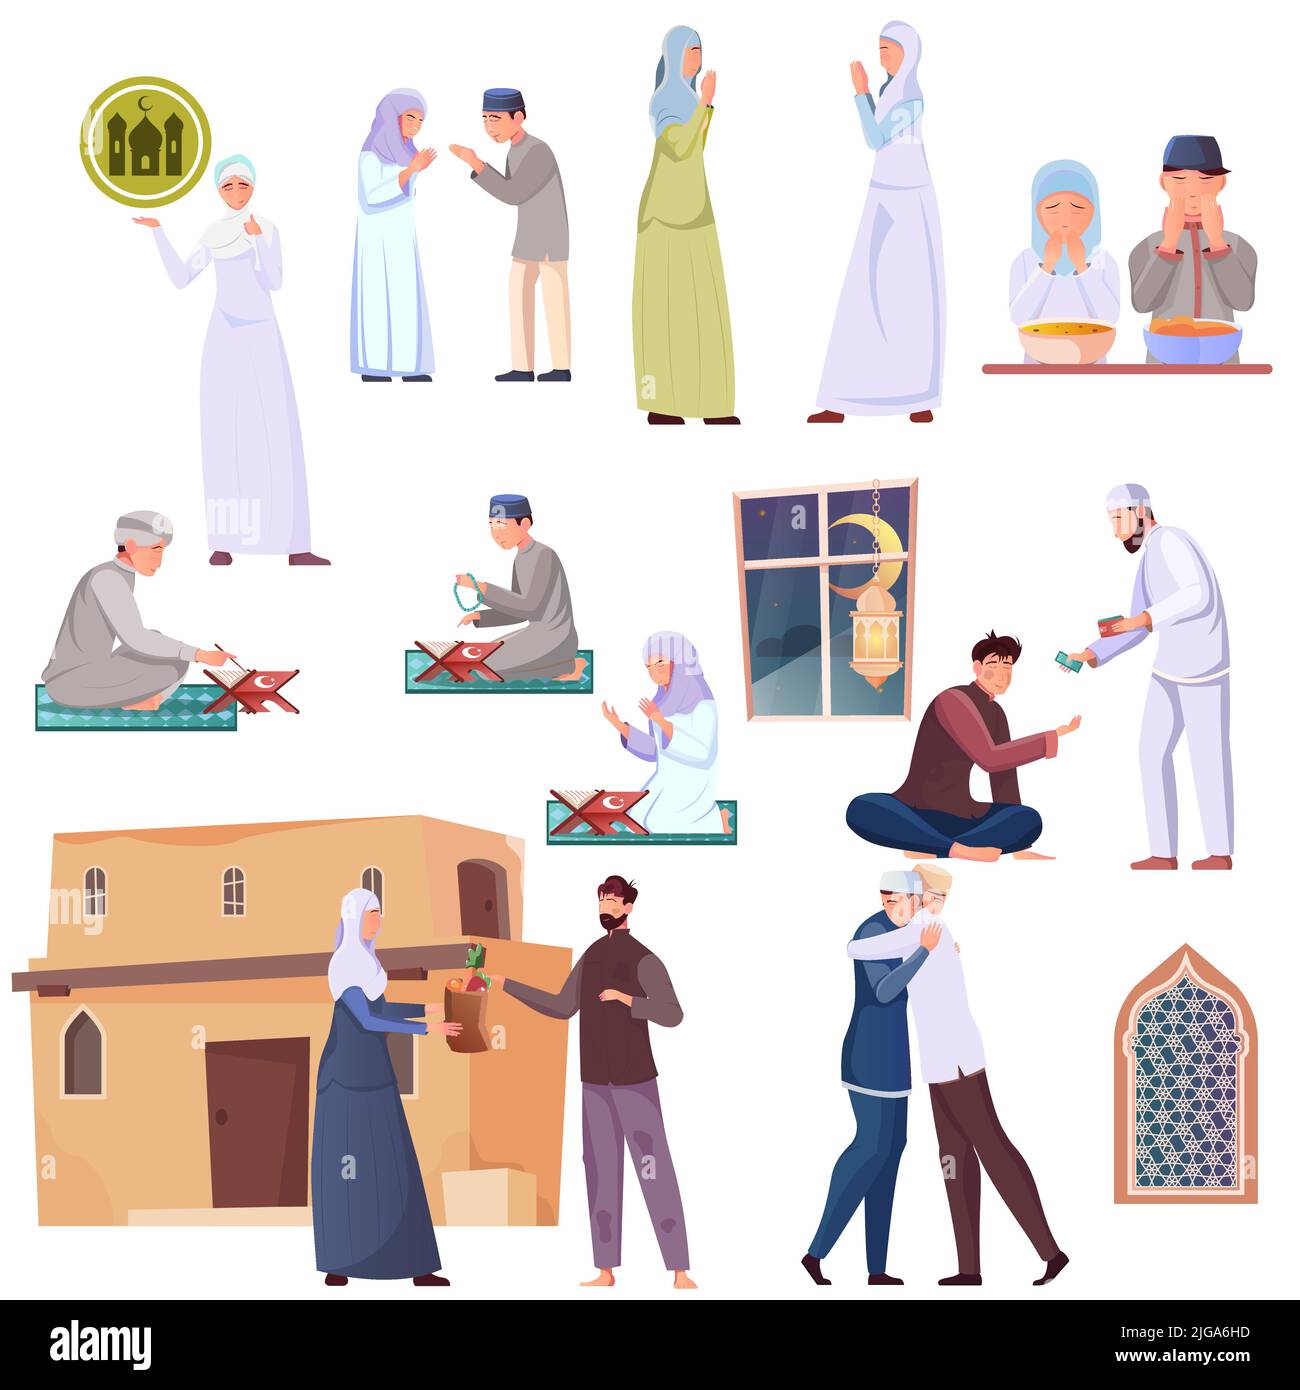 Icônes du ramadan plat avec des musulmans priant de donner de l'argent et de la nourriture ayant l'iftar saluant l'autre illustration vectorielle isolée Illustration de Vecteur